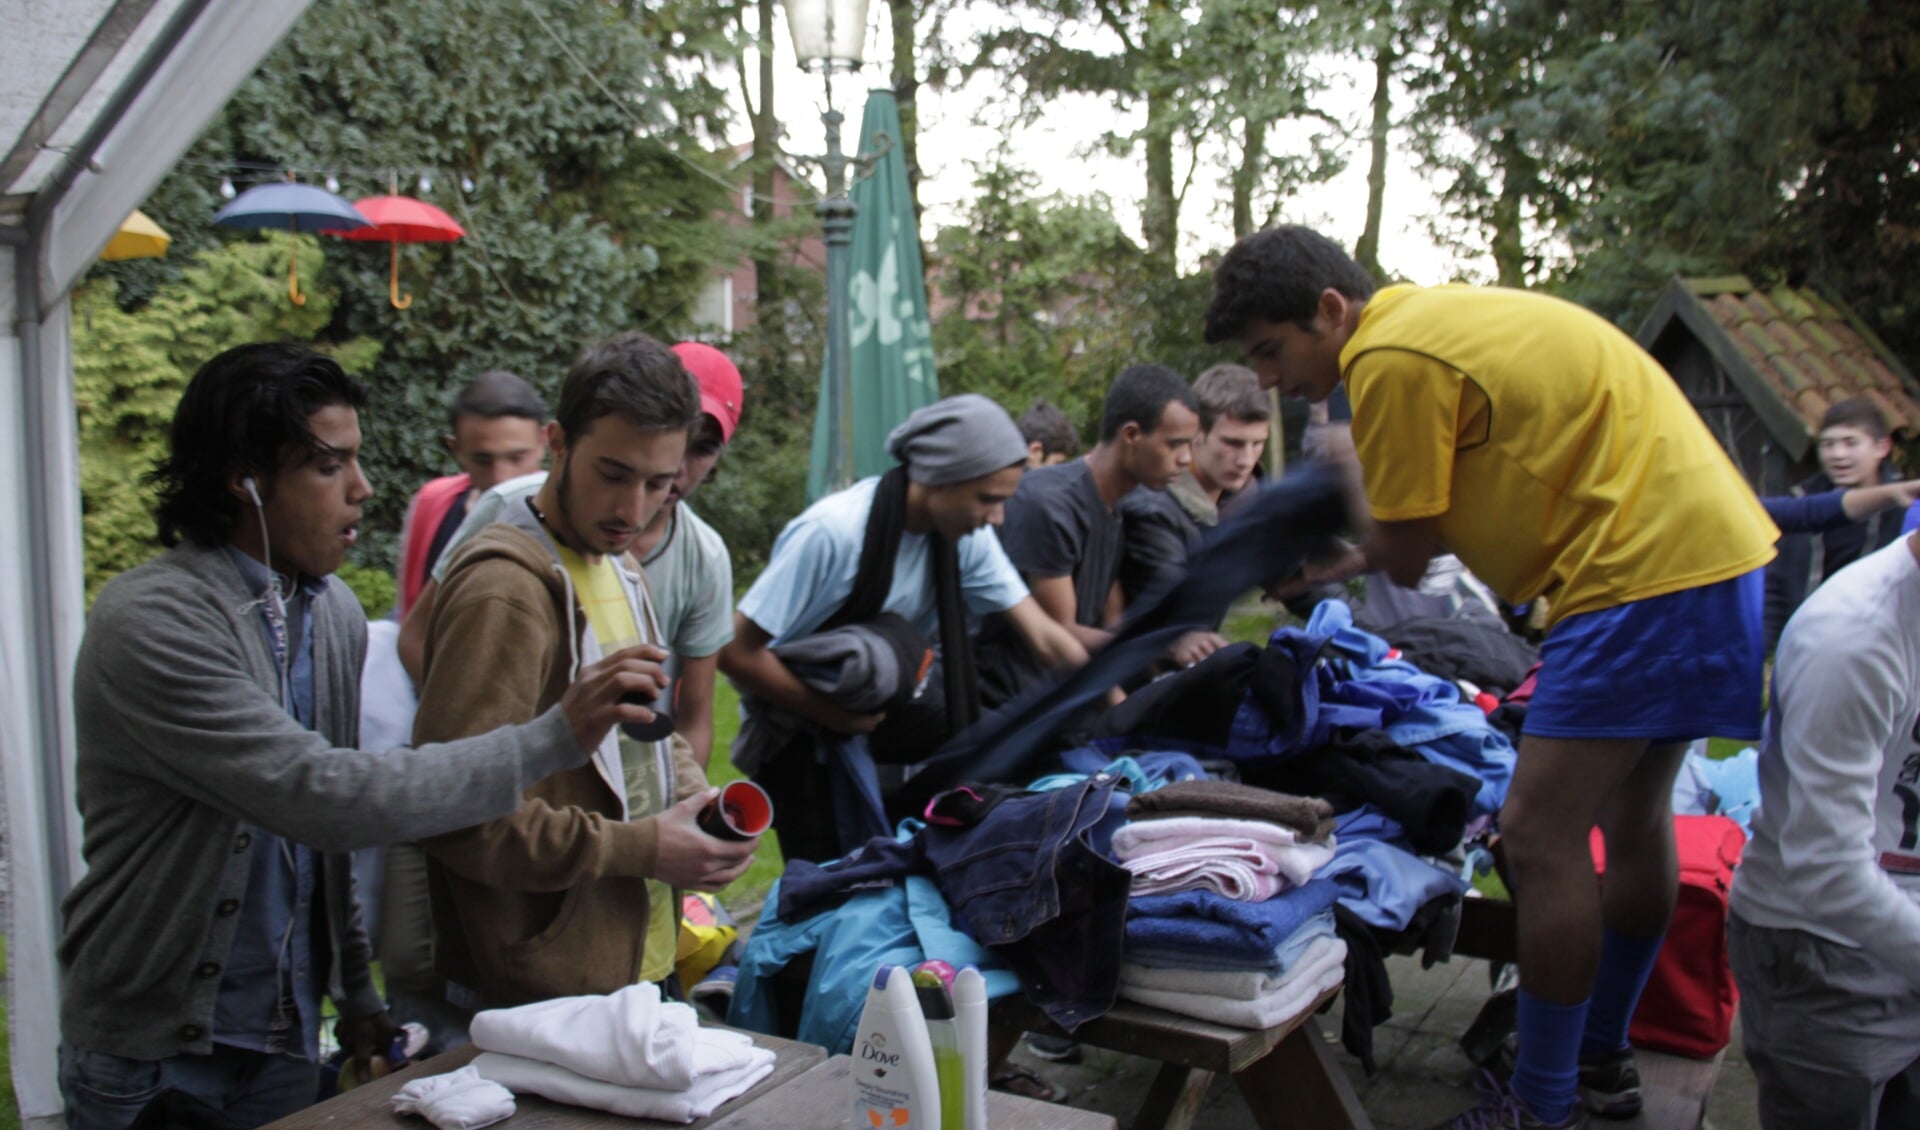 De vluchtelingen worden op allerlei manieren geholpen. Foto: Eveline Zuurbier